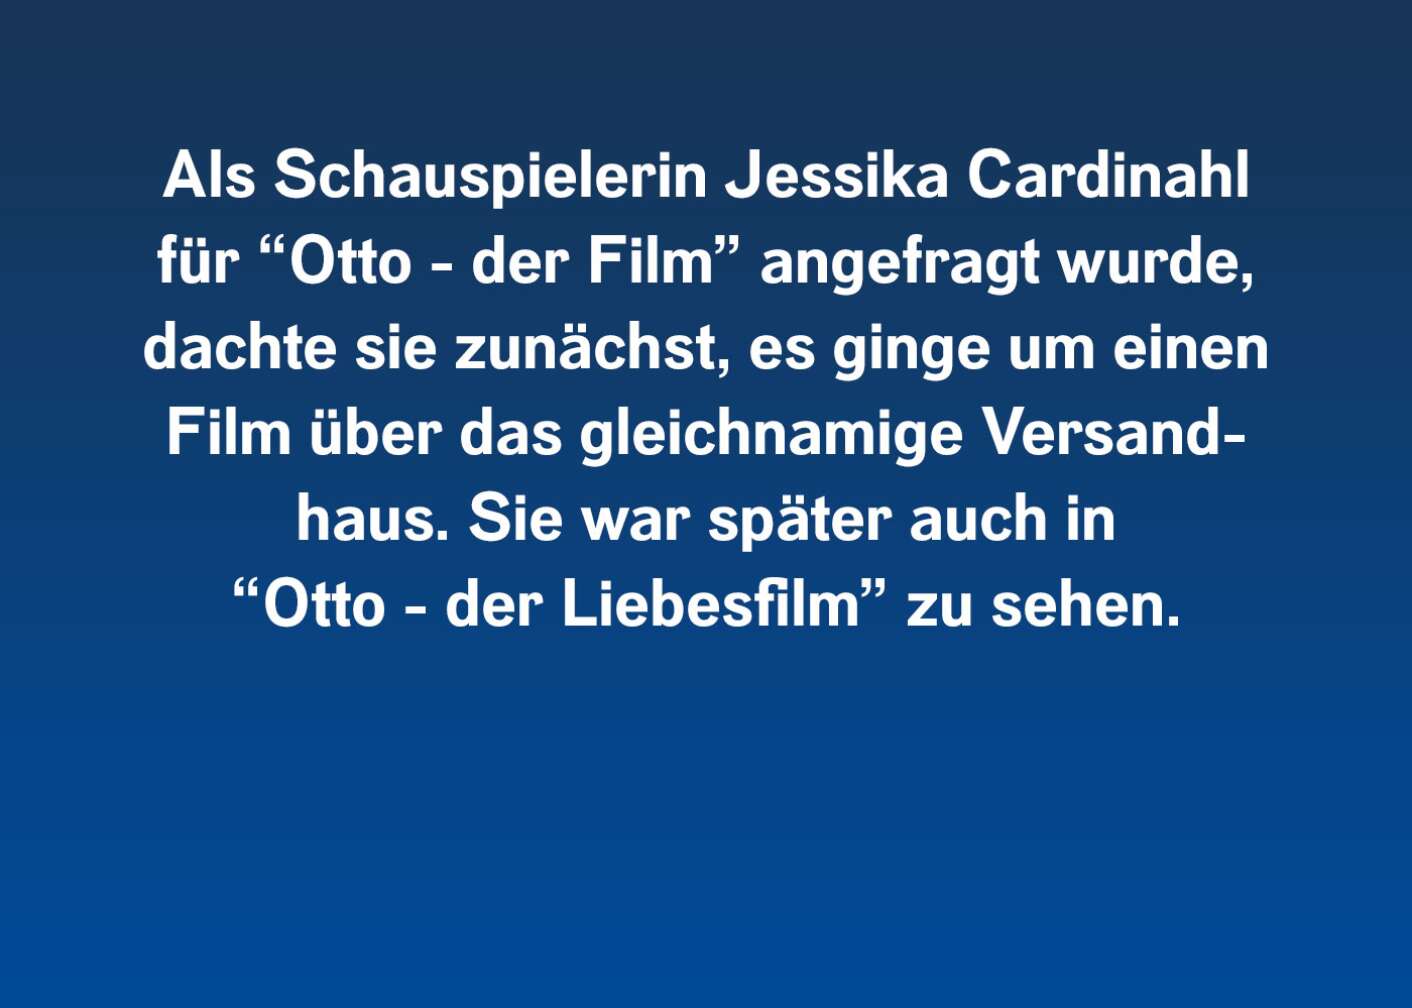 Als Schauspielerin Jessika Cardinahl für "Otto - der Film" angefragt wurde, dachte sie zunächst, es ginge um einen Film über das gleichnamige Versandhaus. Sie war später auch in "Otto - der Liebesfilm" zu sehen.